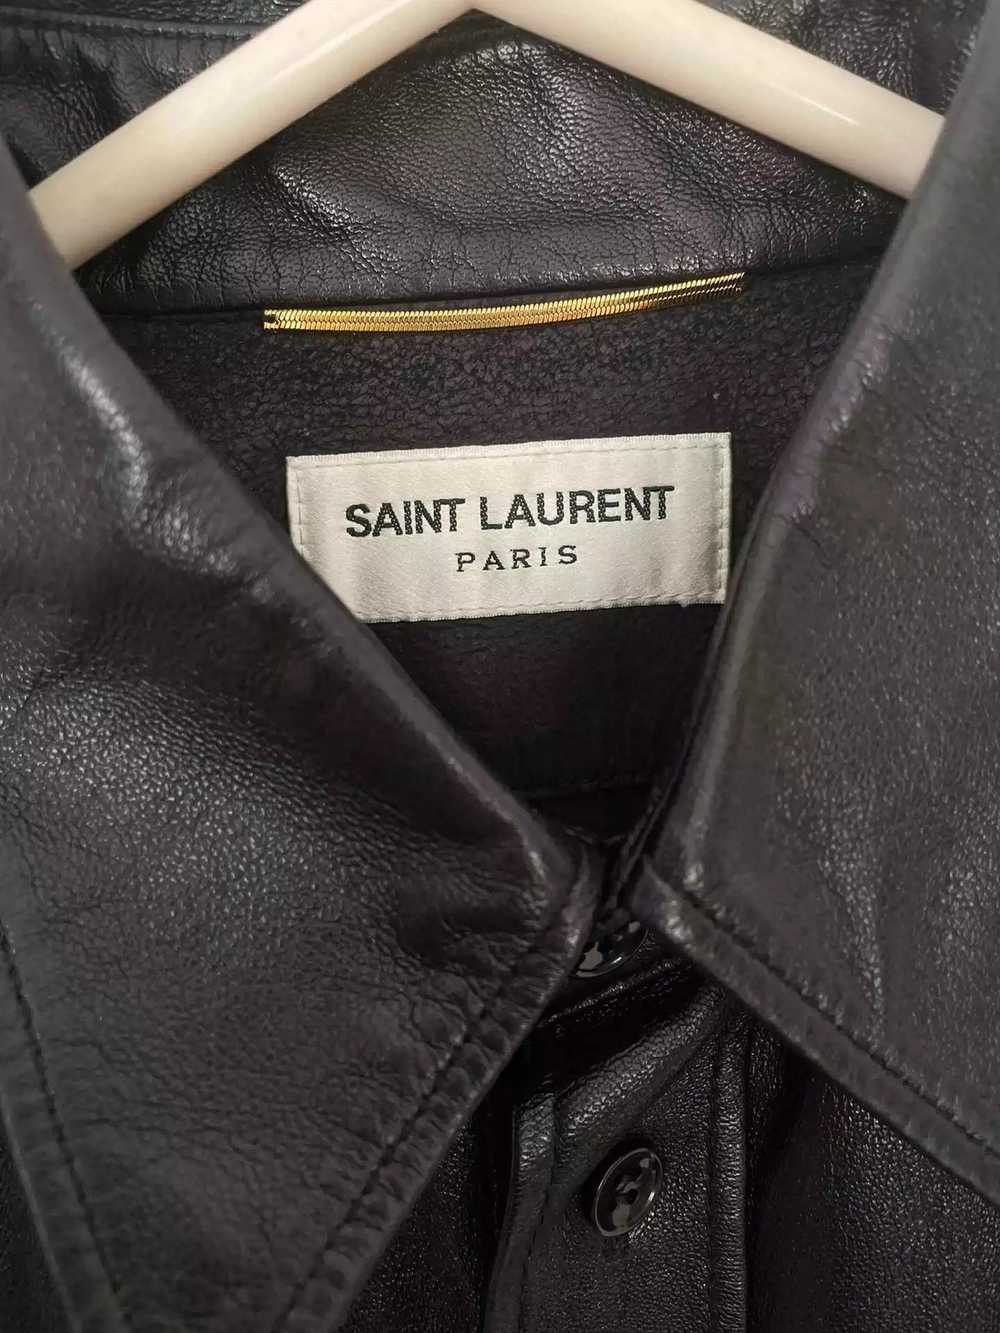 Yves Saint Laurent Saint Laurent Leather Shirt - image 3